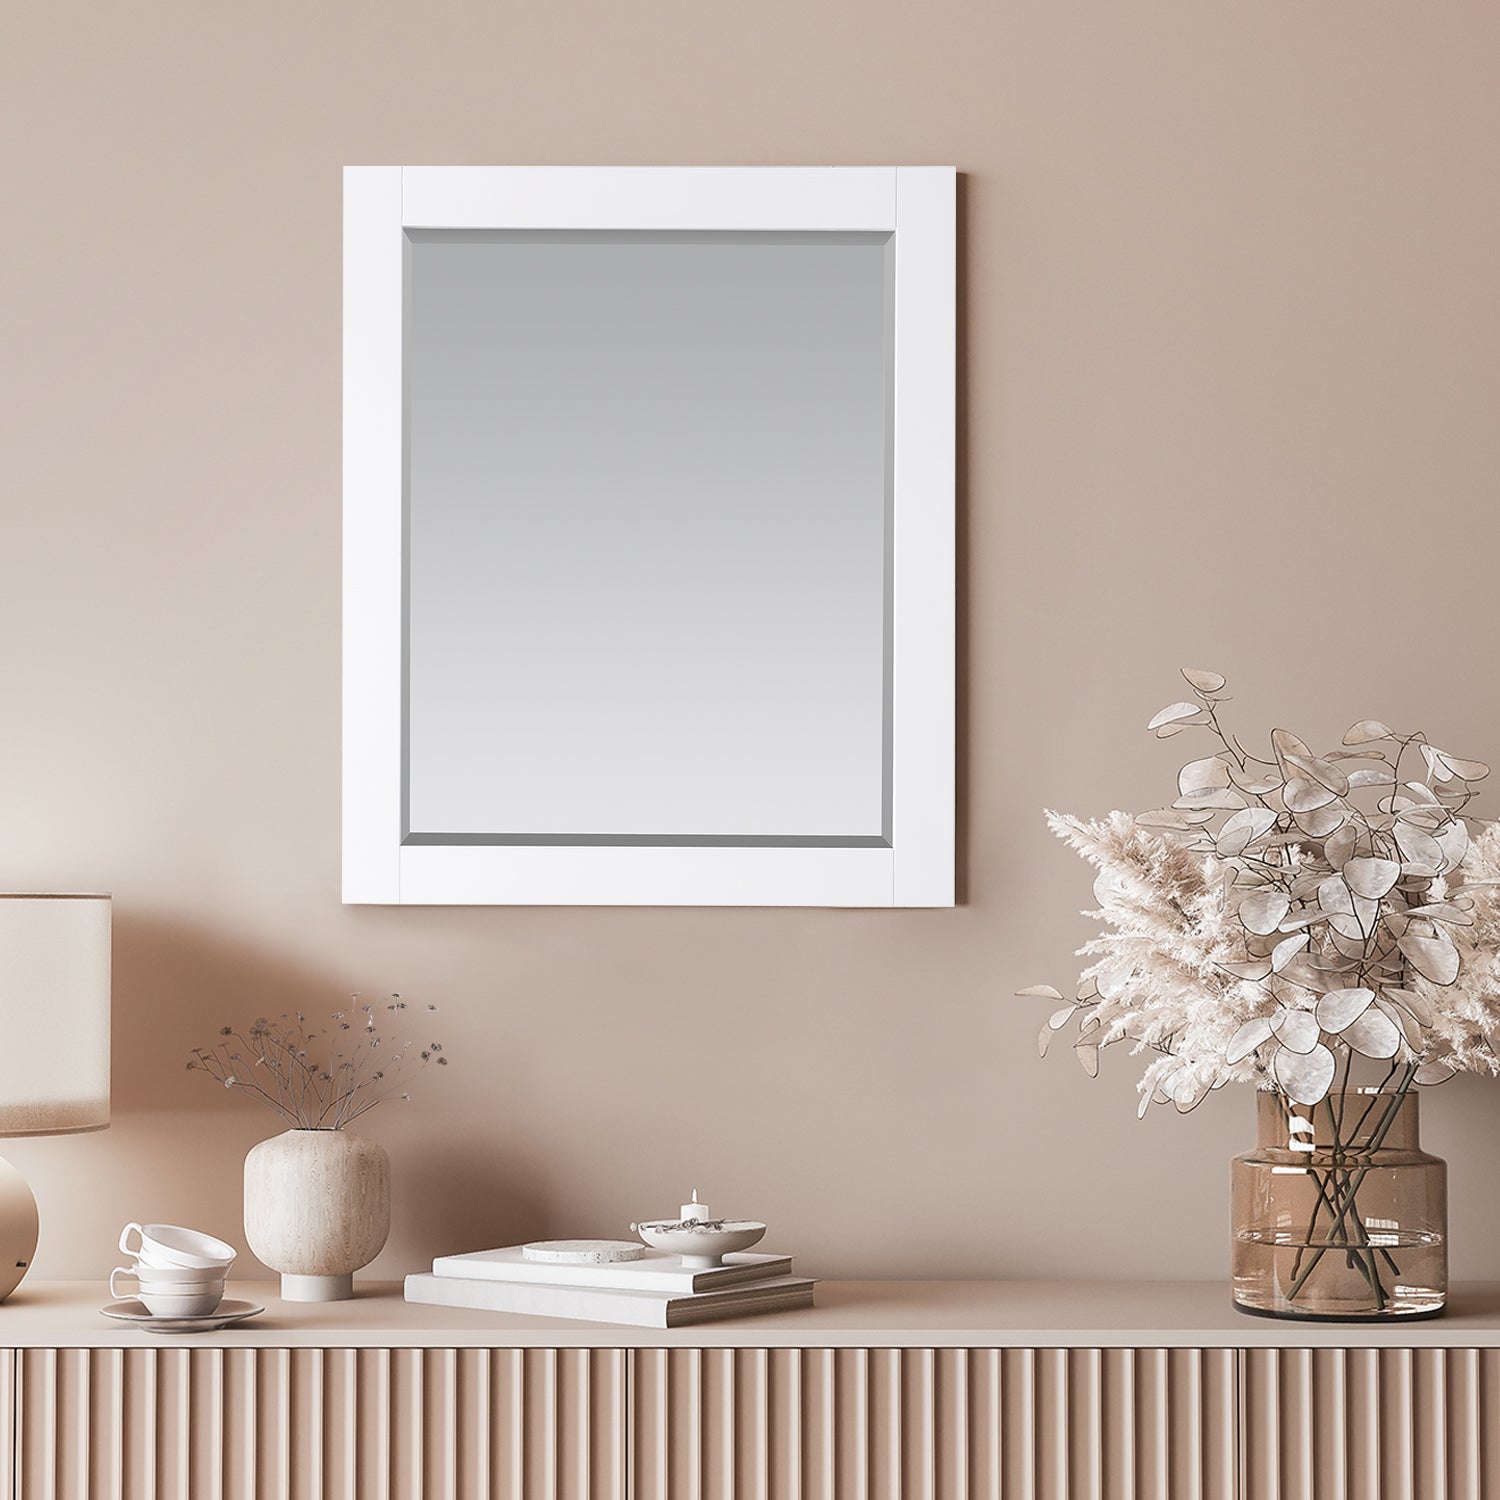 Maribella 28" Rectangular Bathroom Wood Framed Wall Mirror